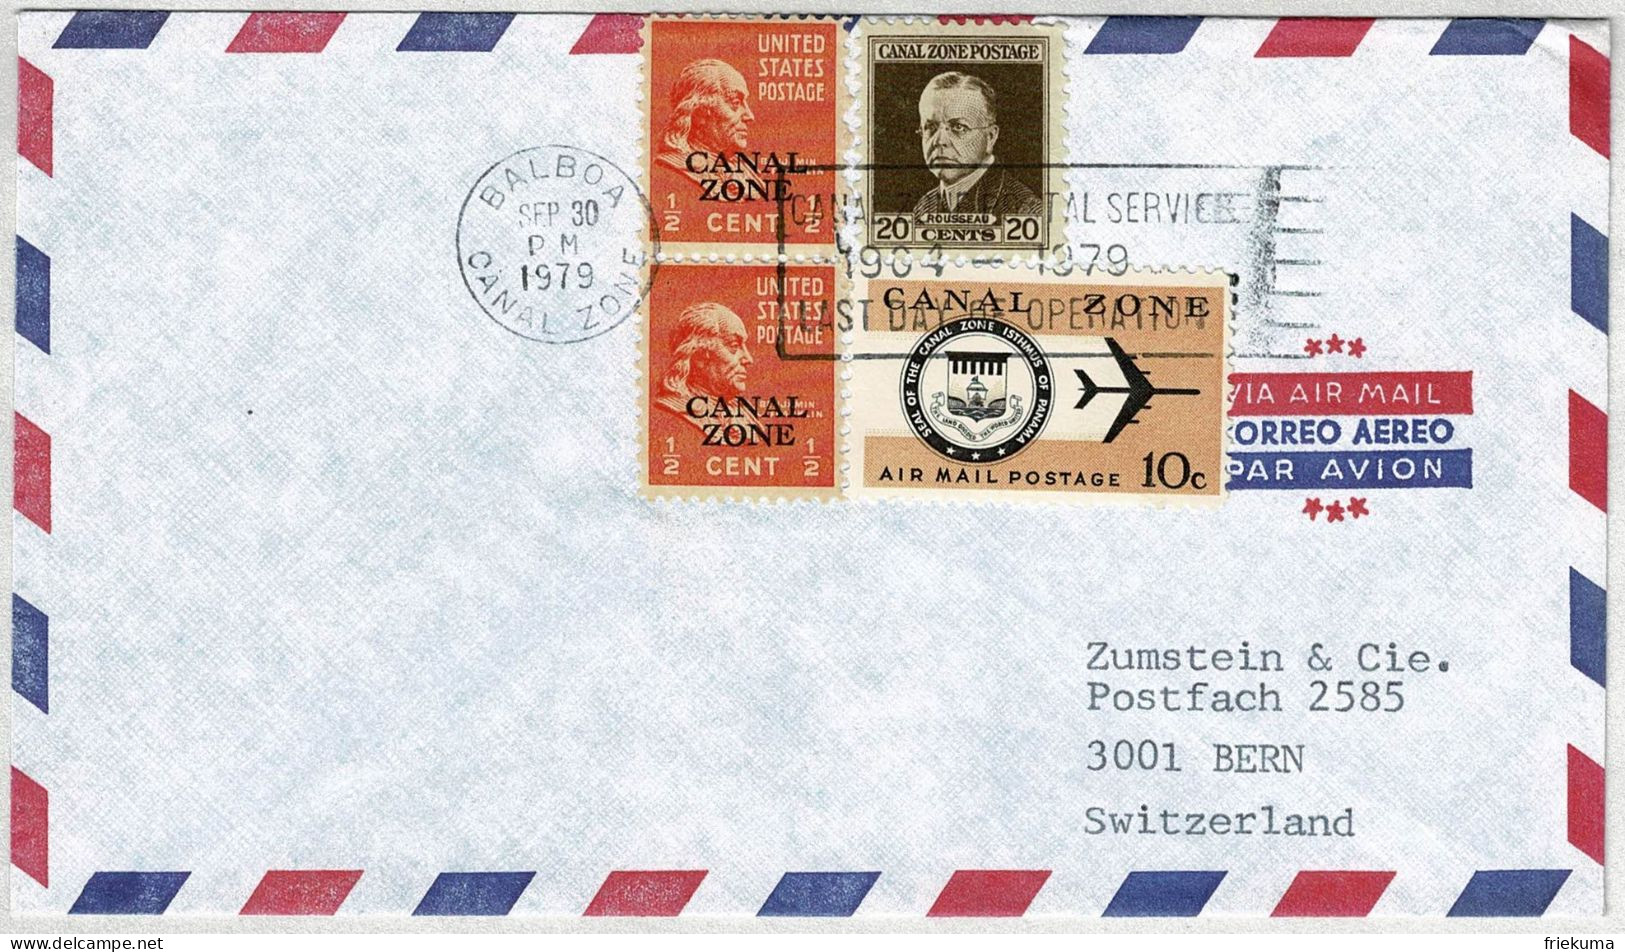 Vereinigte Staaten / USA Canal Zone 1979, Luftpostbrief Balboa  - Bern (Schweiz), Letzttag Posthoheit USA - Kanaalzone